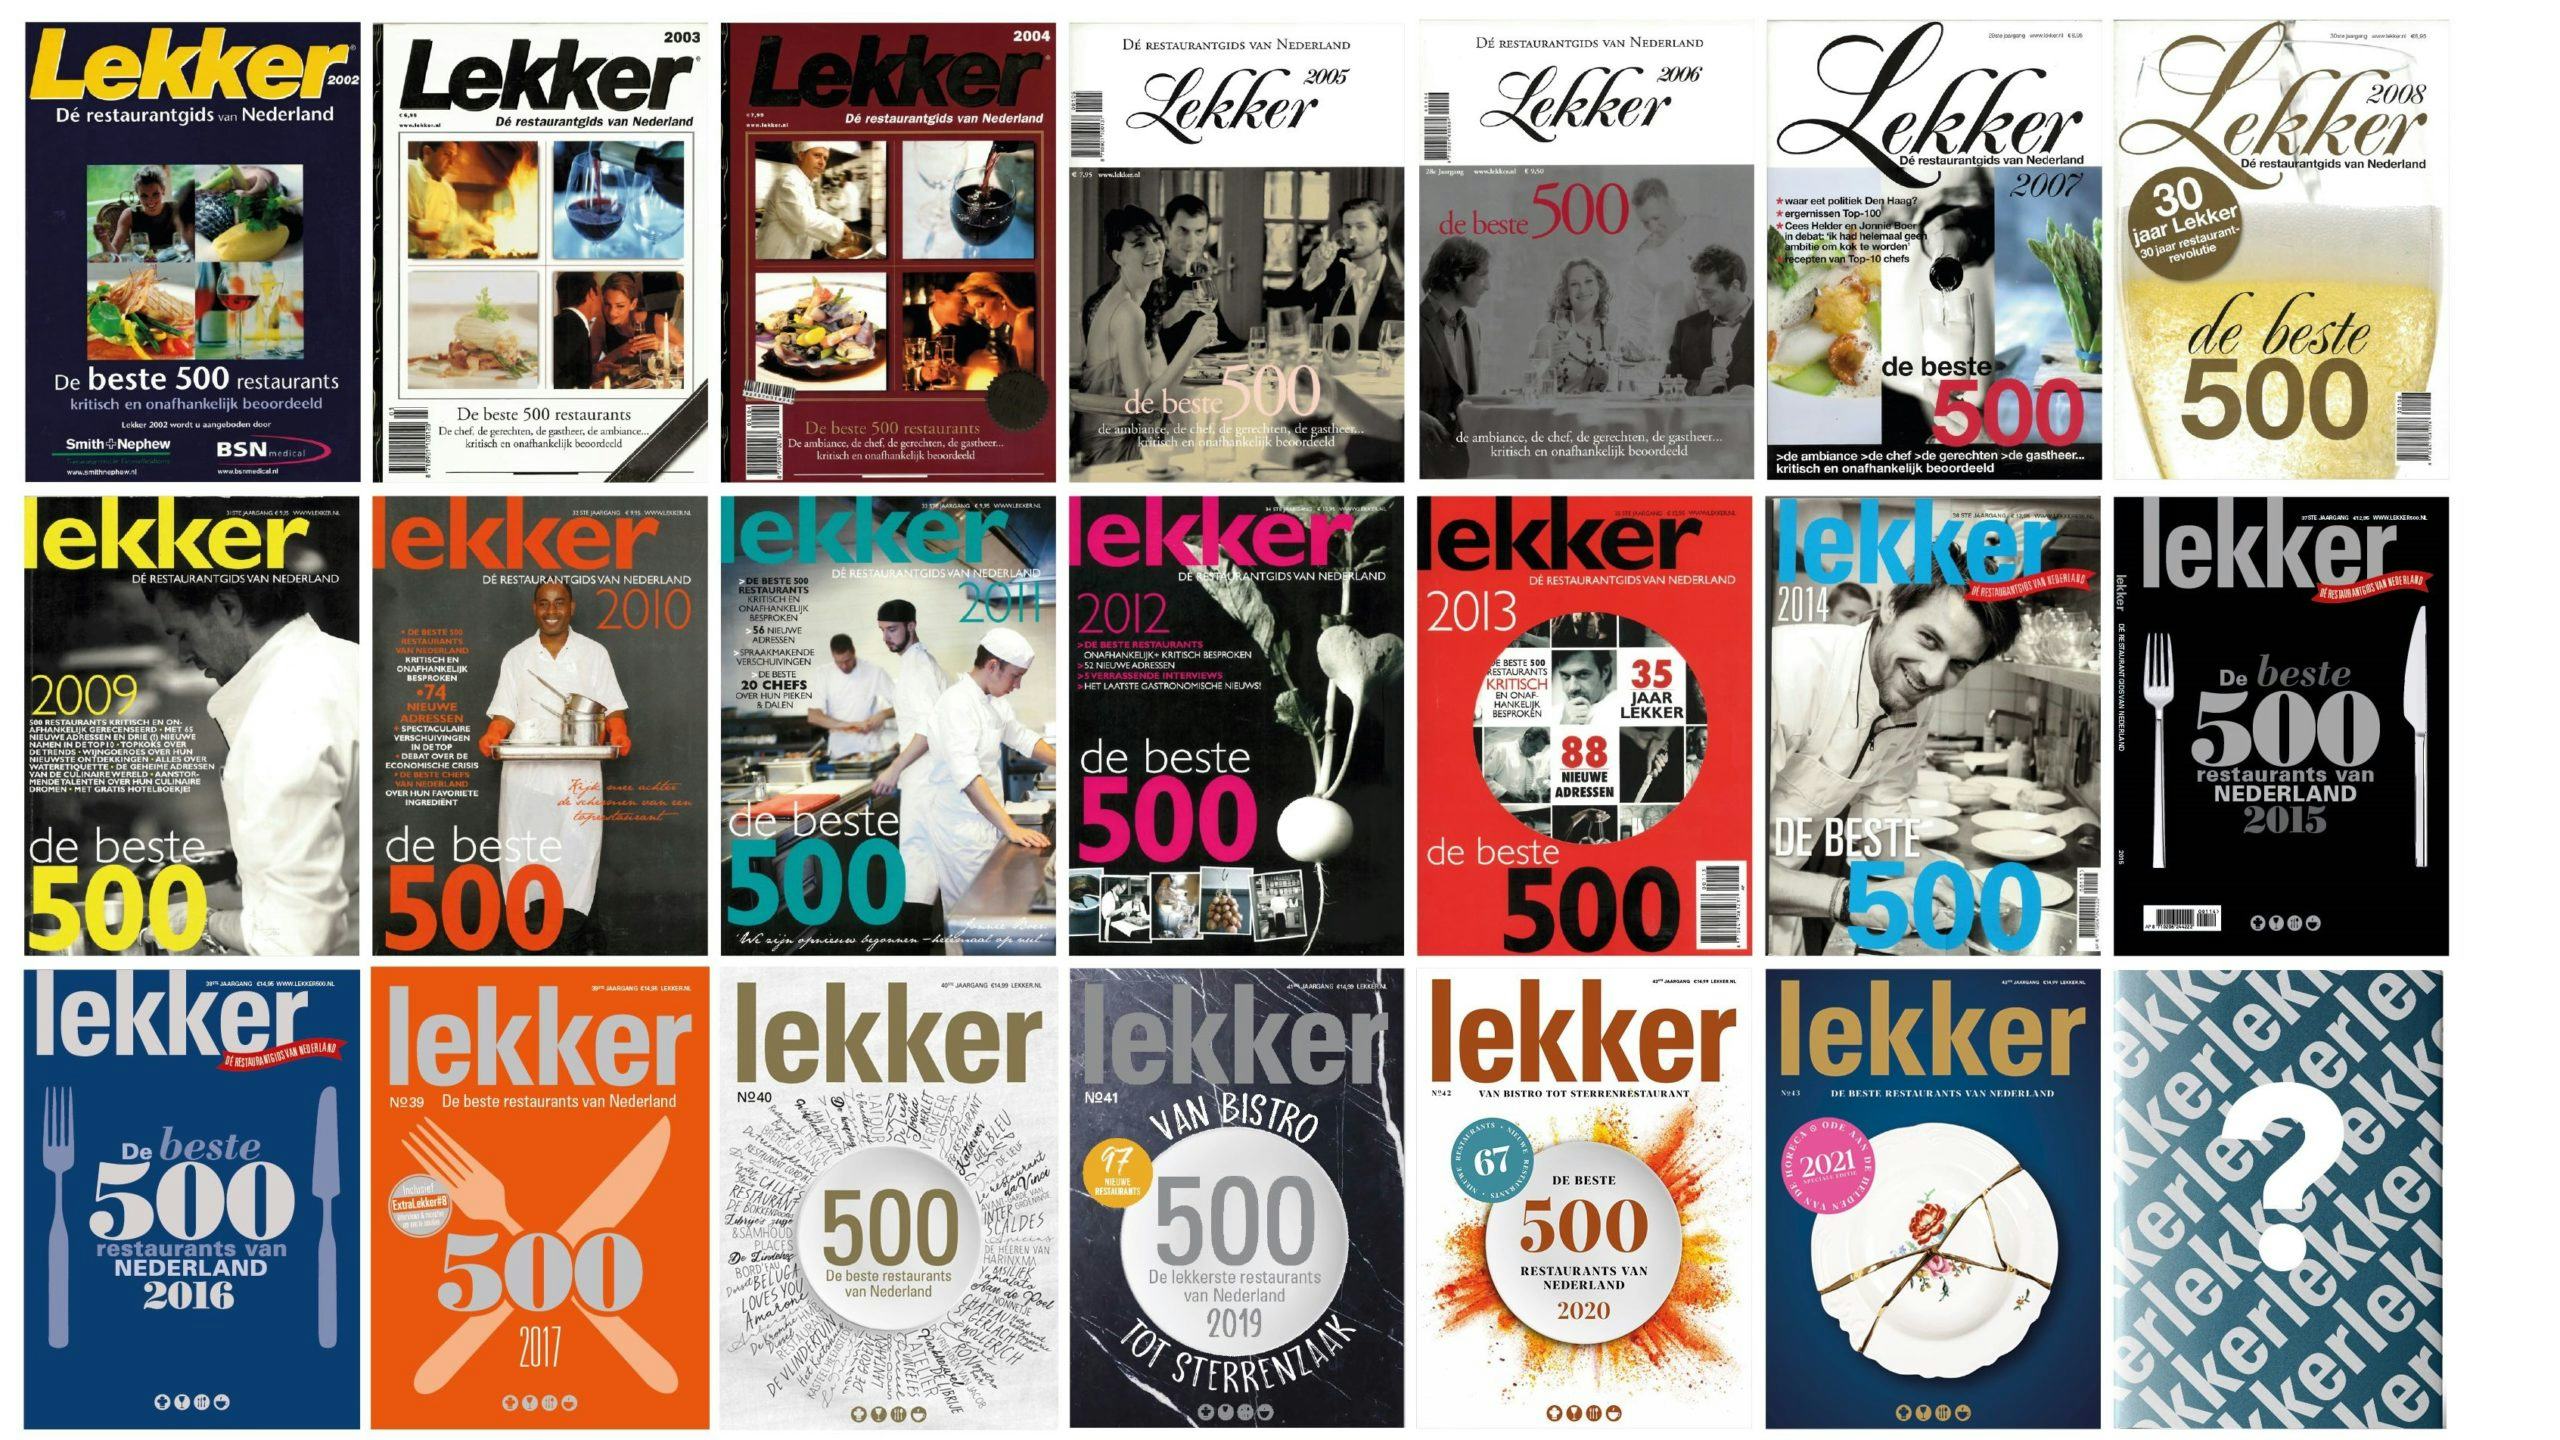 Restaurantgids Lekker 500 krijgt weer ranglijst in volgende editie